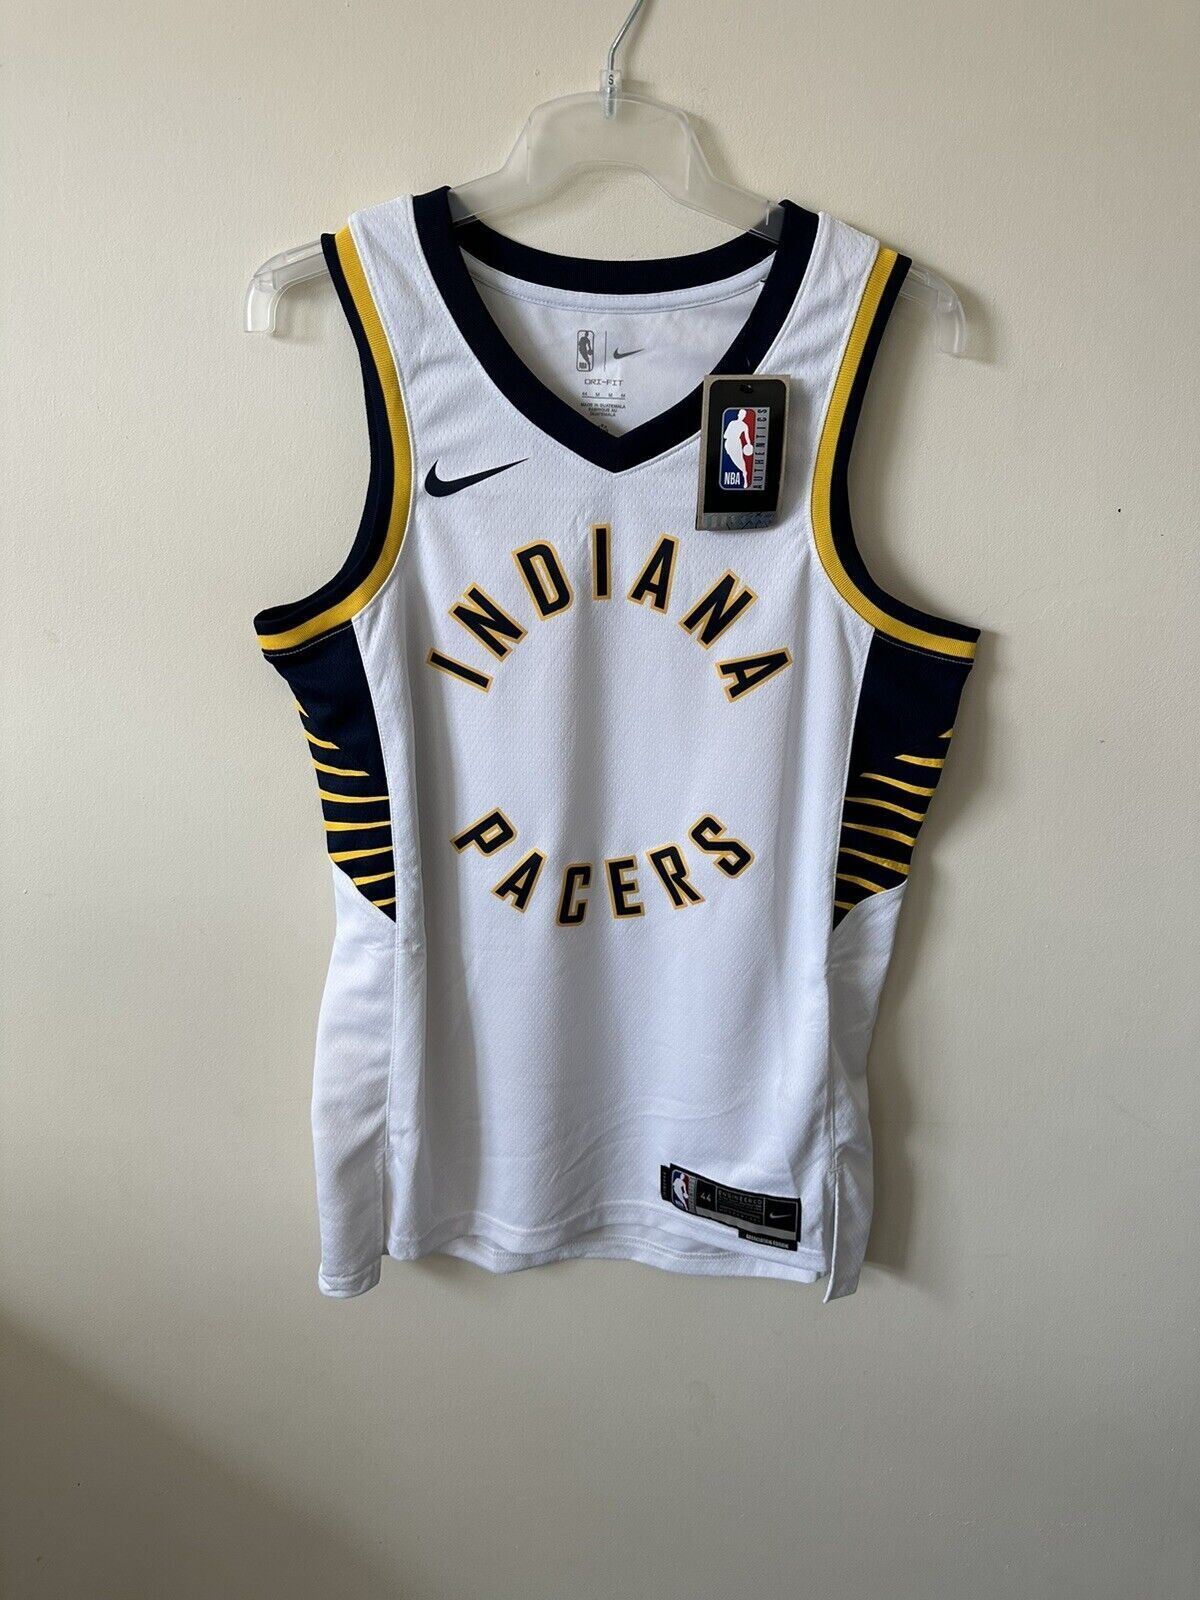 Nike NBA Indiana Pacers Association Edition MATHURIN 00 Men’s Medium